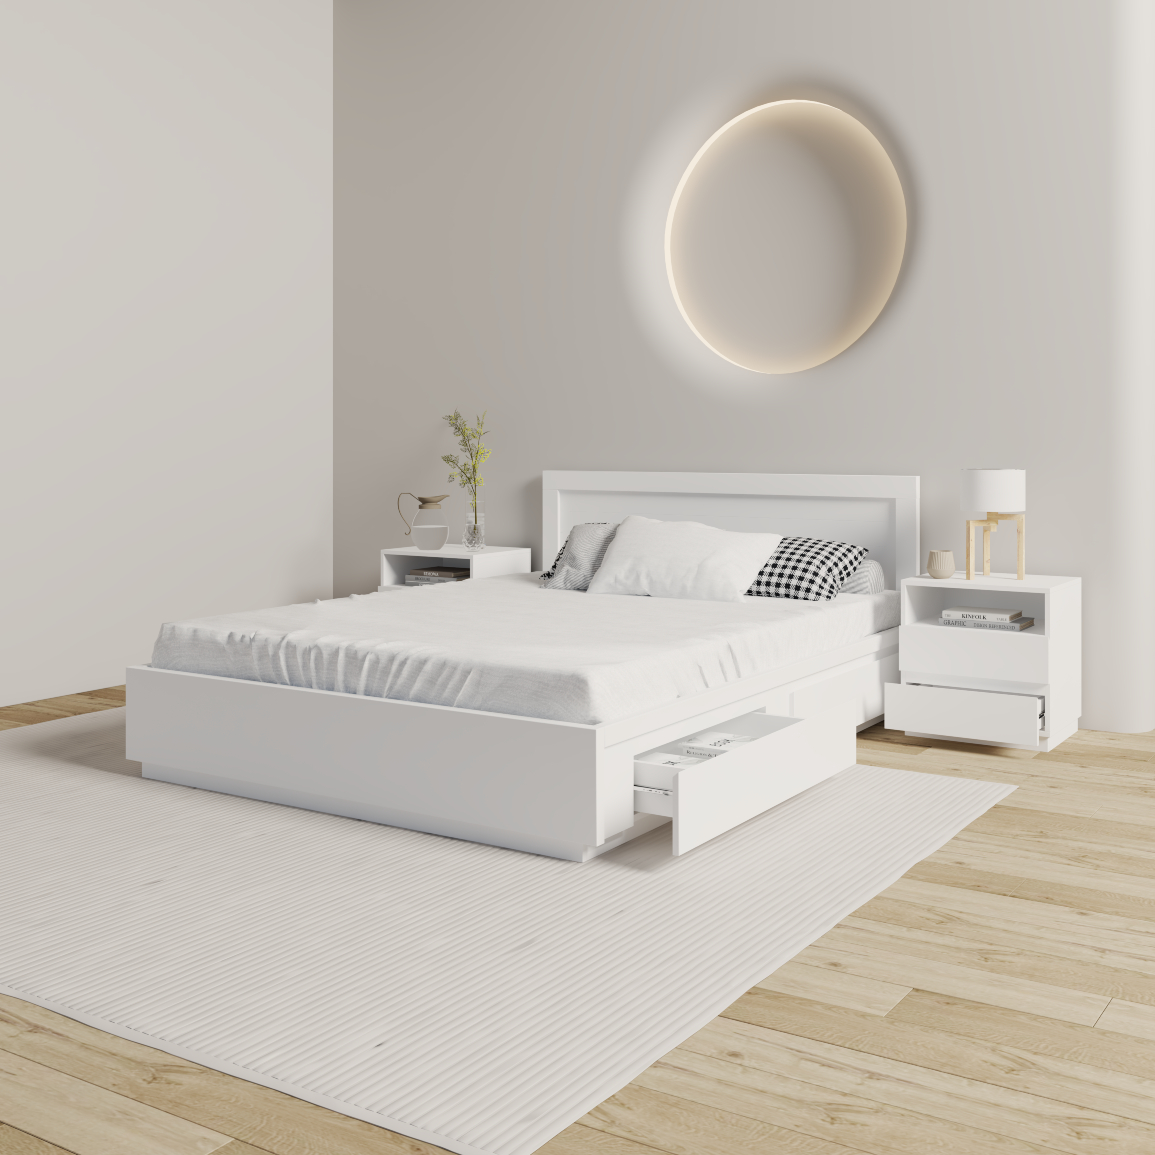 [Happy Home Furniture] MACRO  , Giường ngủ hiện đại - 2 Ngăn tủ kéo  , GNG_032, GNG_033, GNG_034, GNG_035